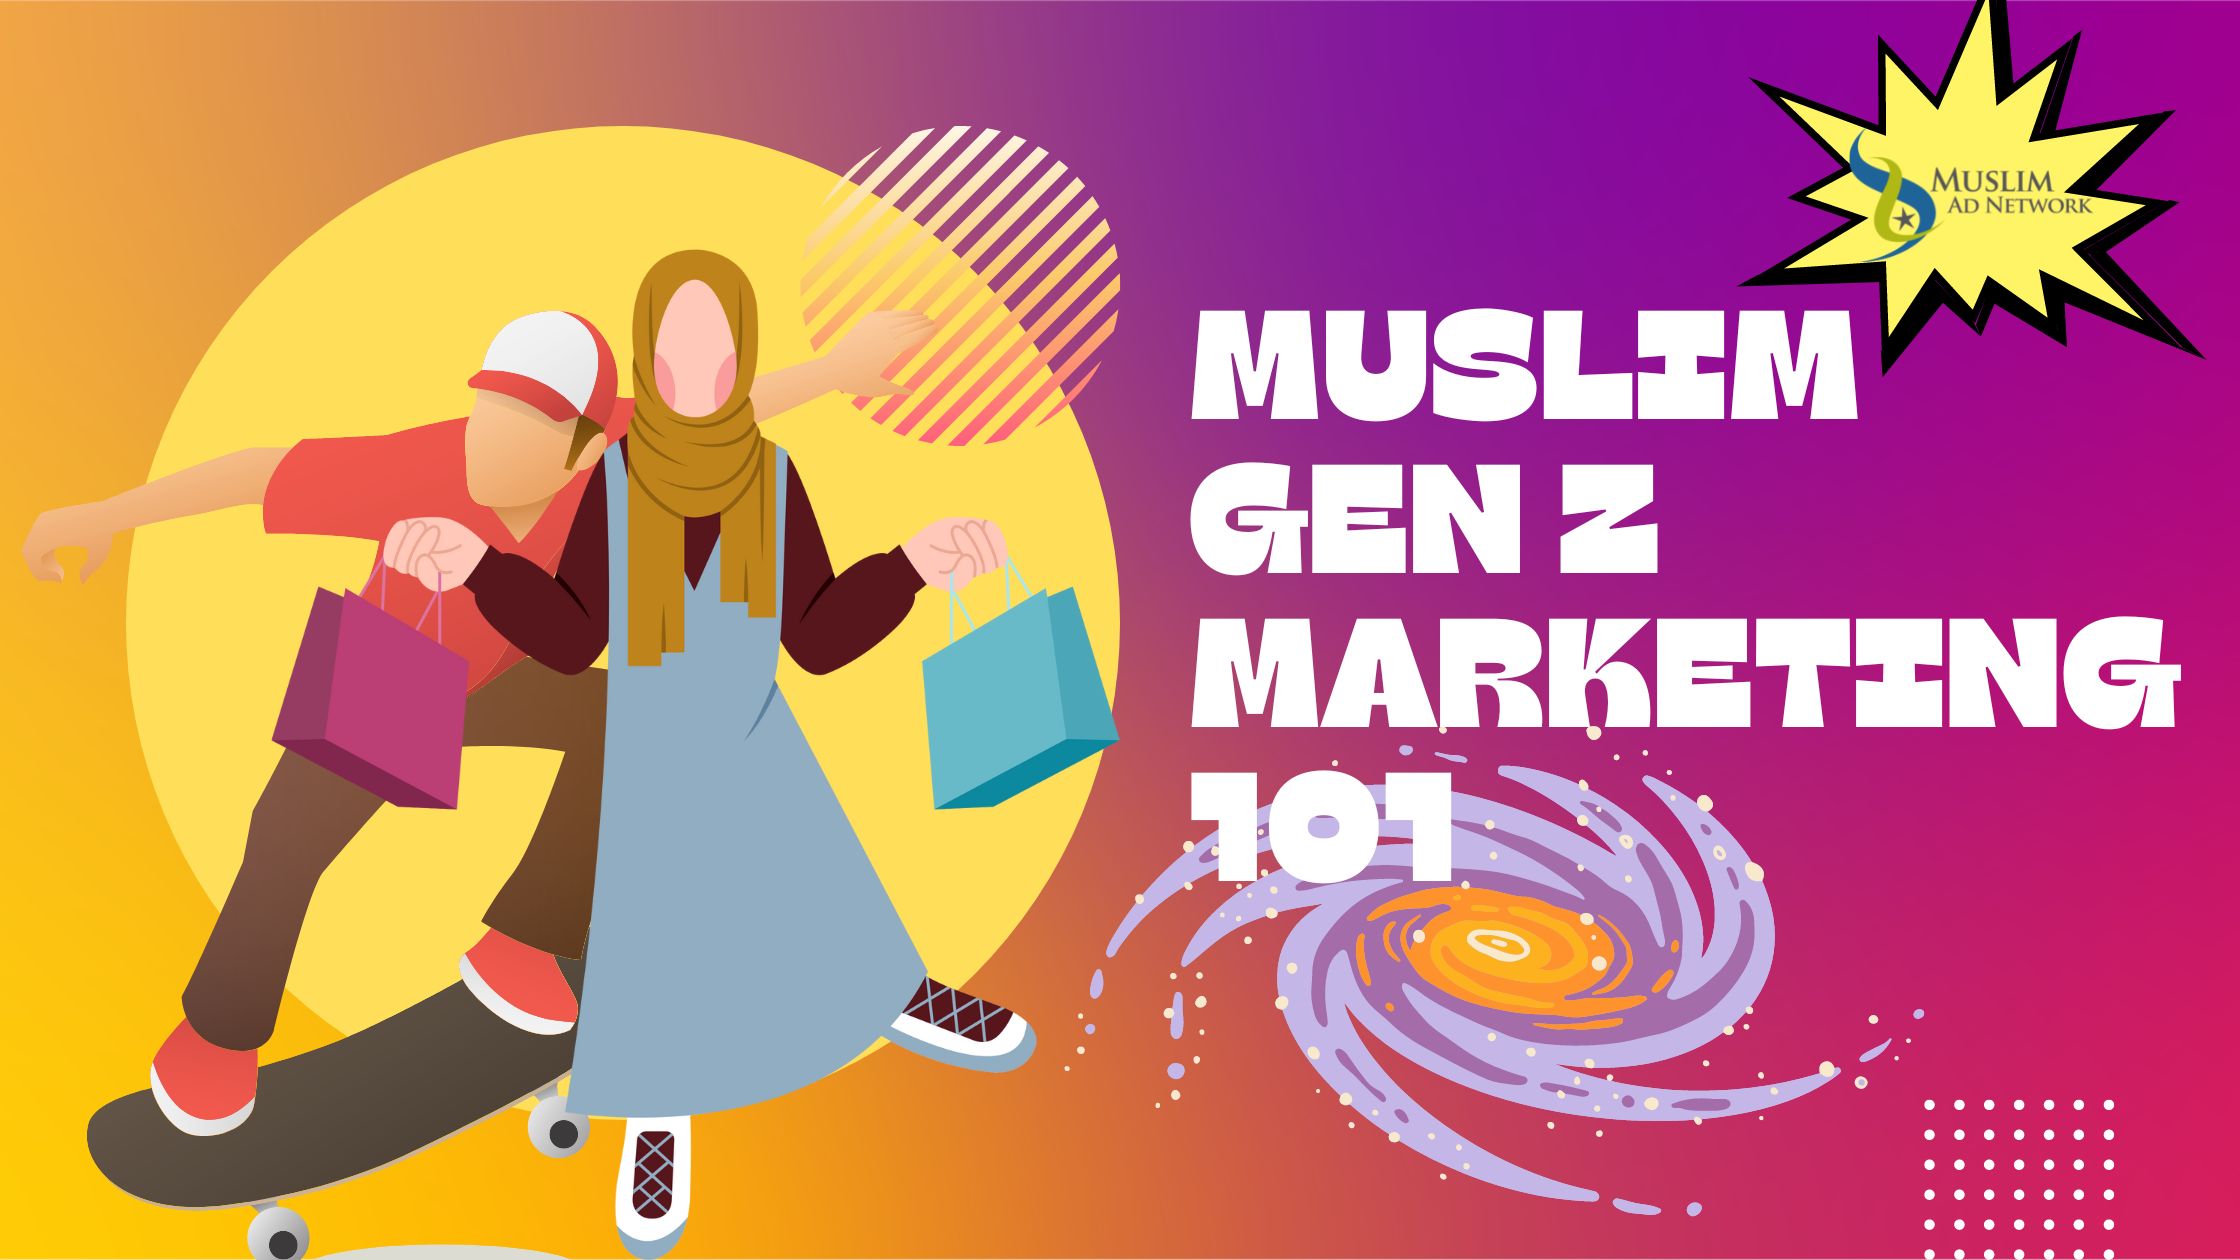 Muslim Gen Z Marketing 101